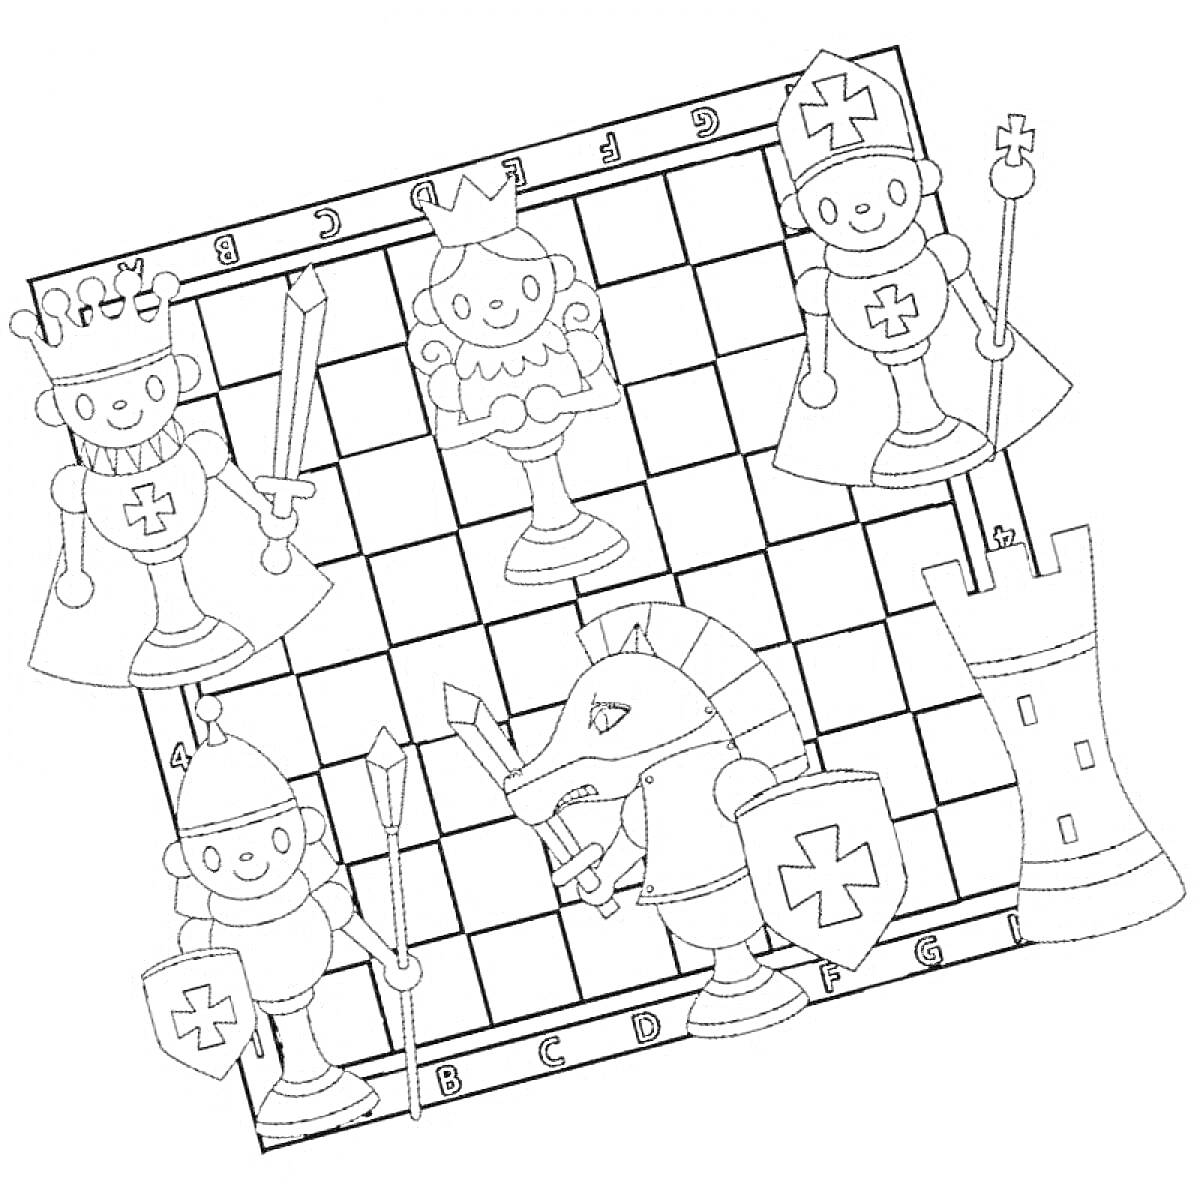 Раскраска с шахматной доской и шахматными фигурами (король, ферзь, ладья, конь, слон, пешка) в образах рыцарей